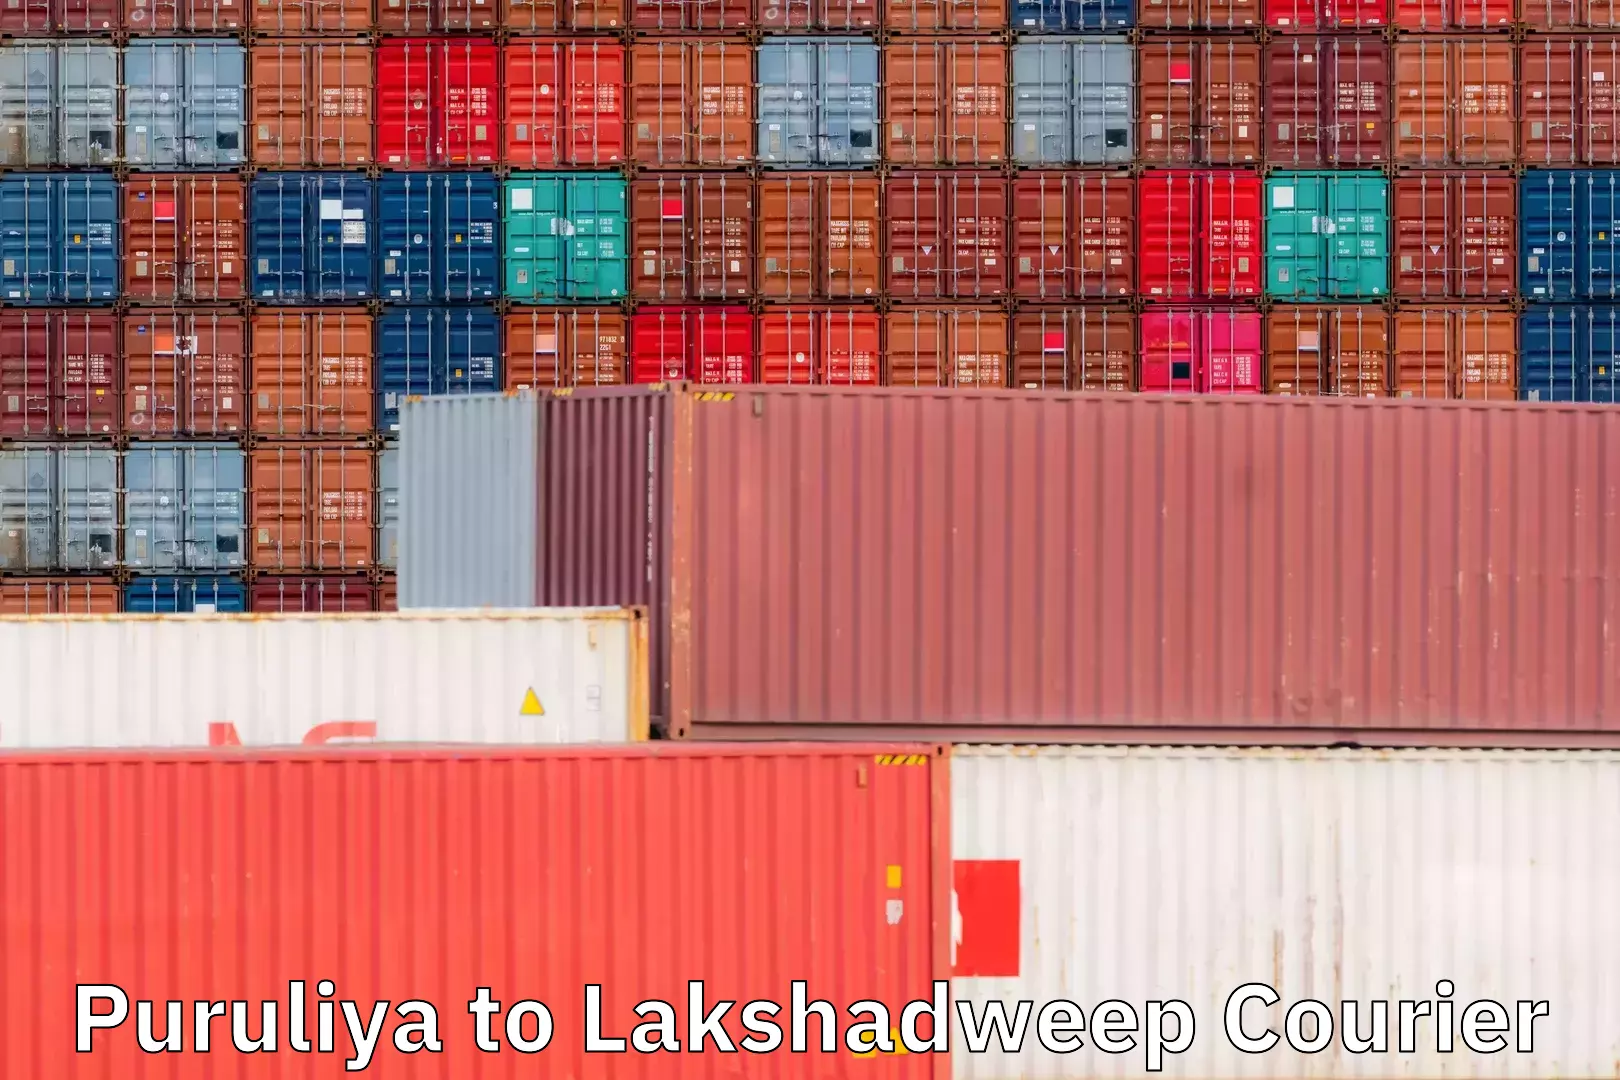 Courier service efficiency Puruliya to Lakshadweep